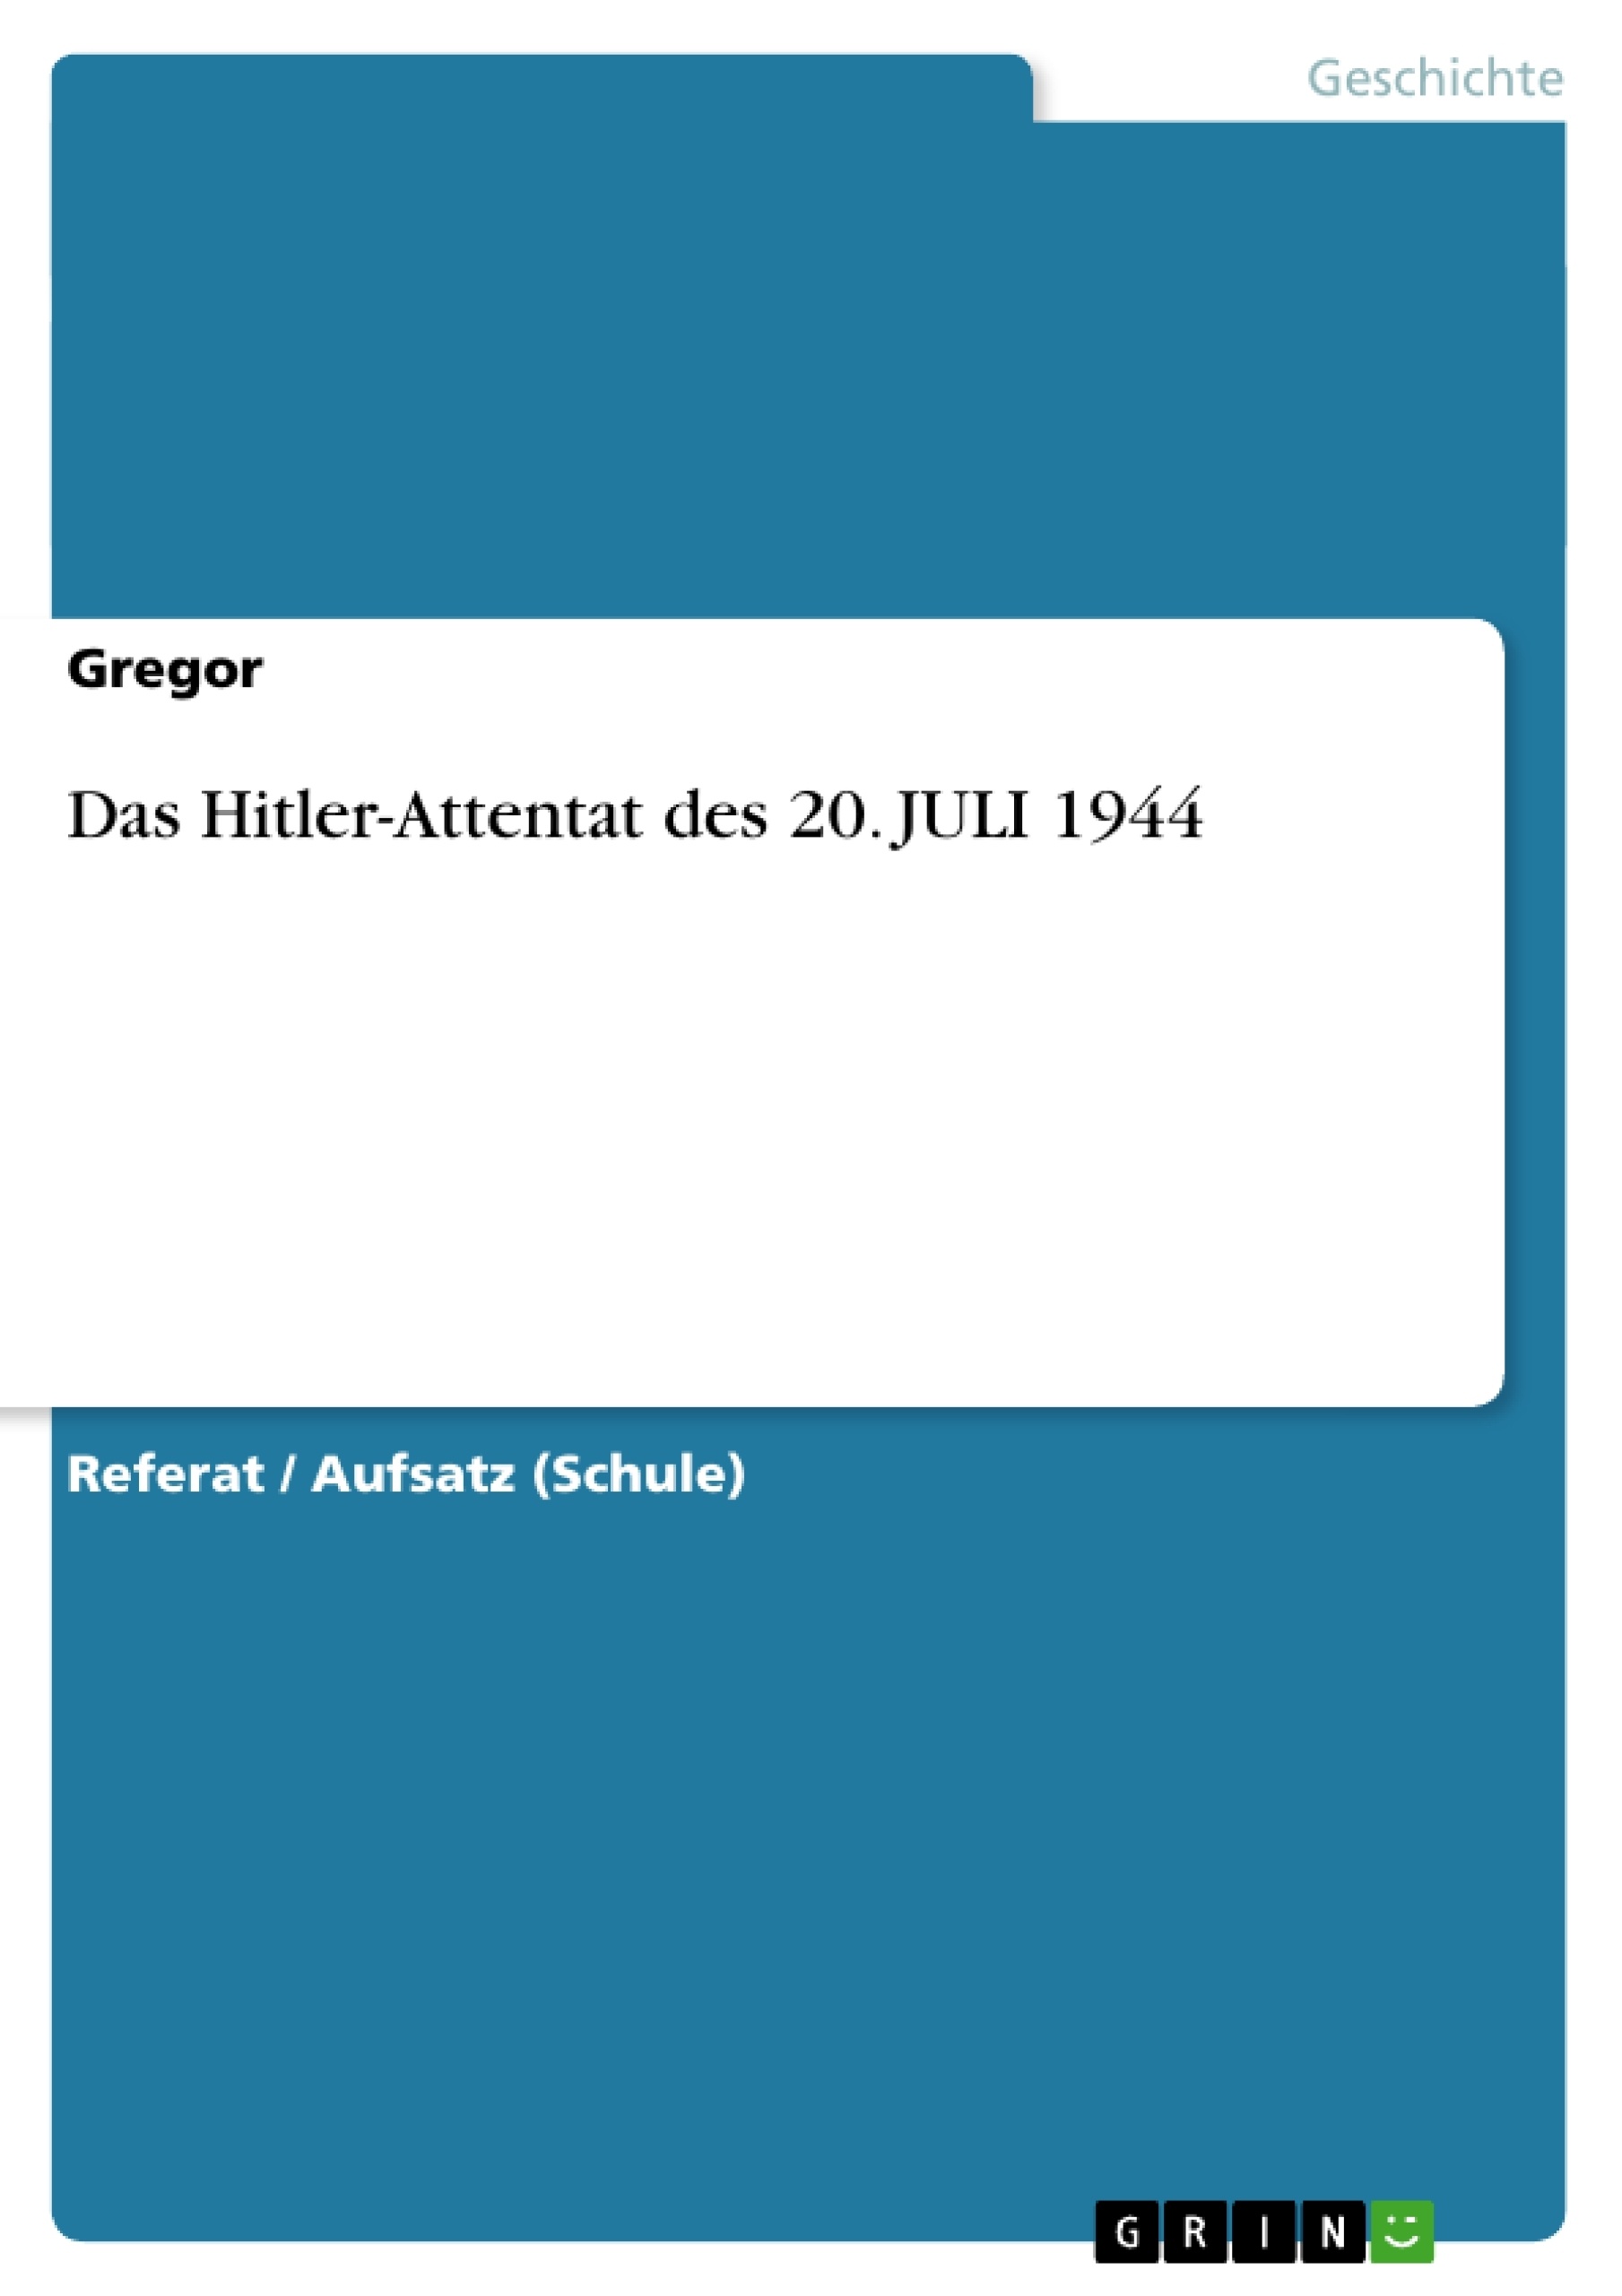 Titel: Das Hitler-Attentat des 20. JULI 1944